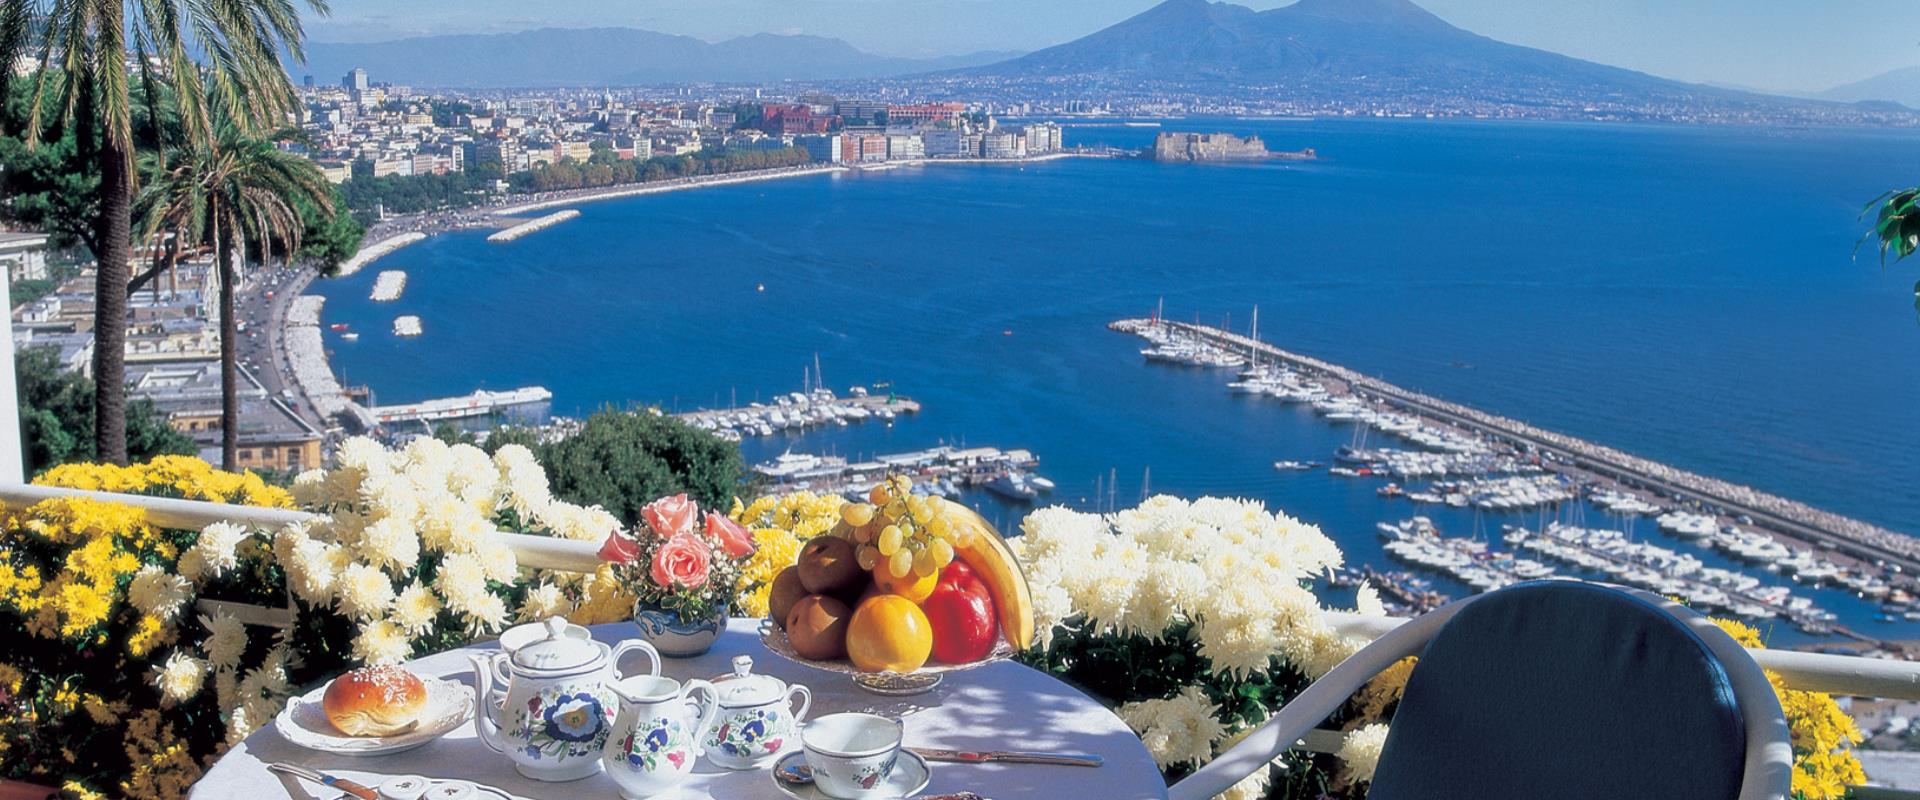 Petit déjeuner avec vue sur le golfe de Naples deBW Signature Collection Hotel Paradiso